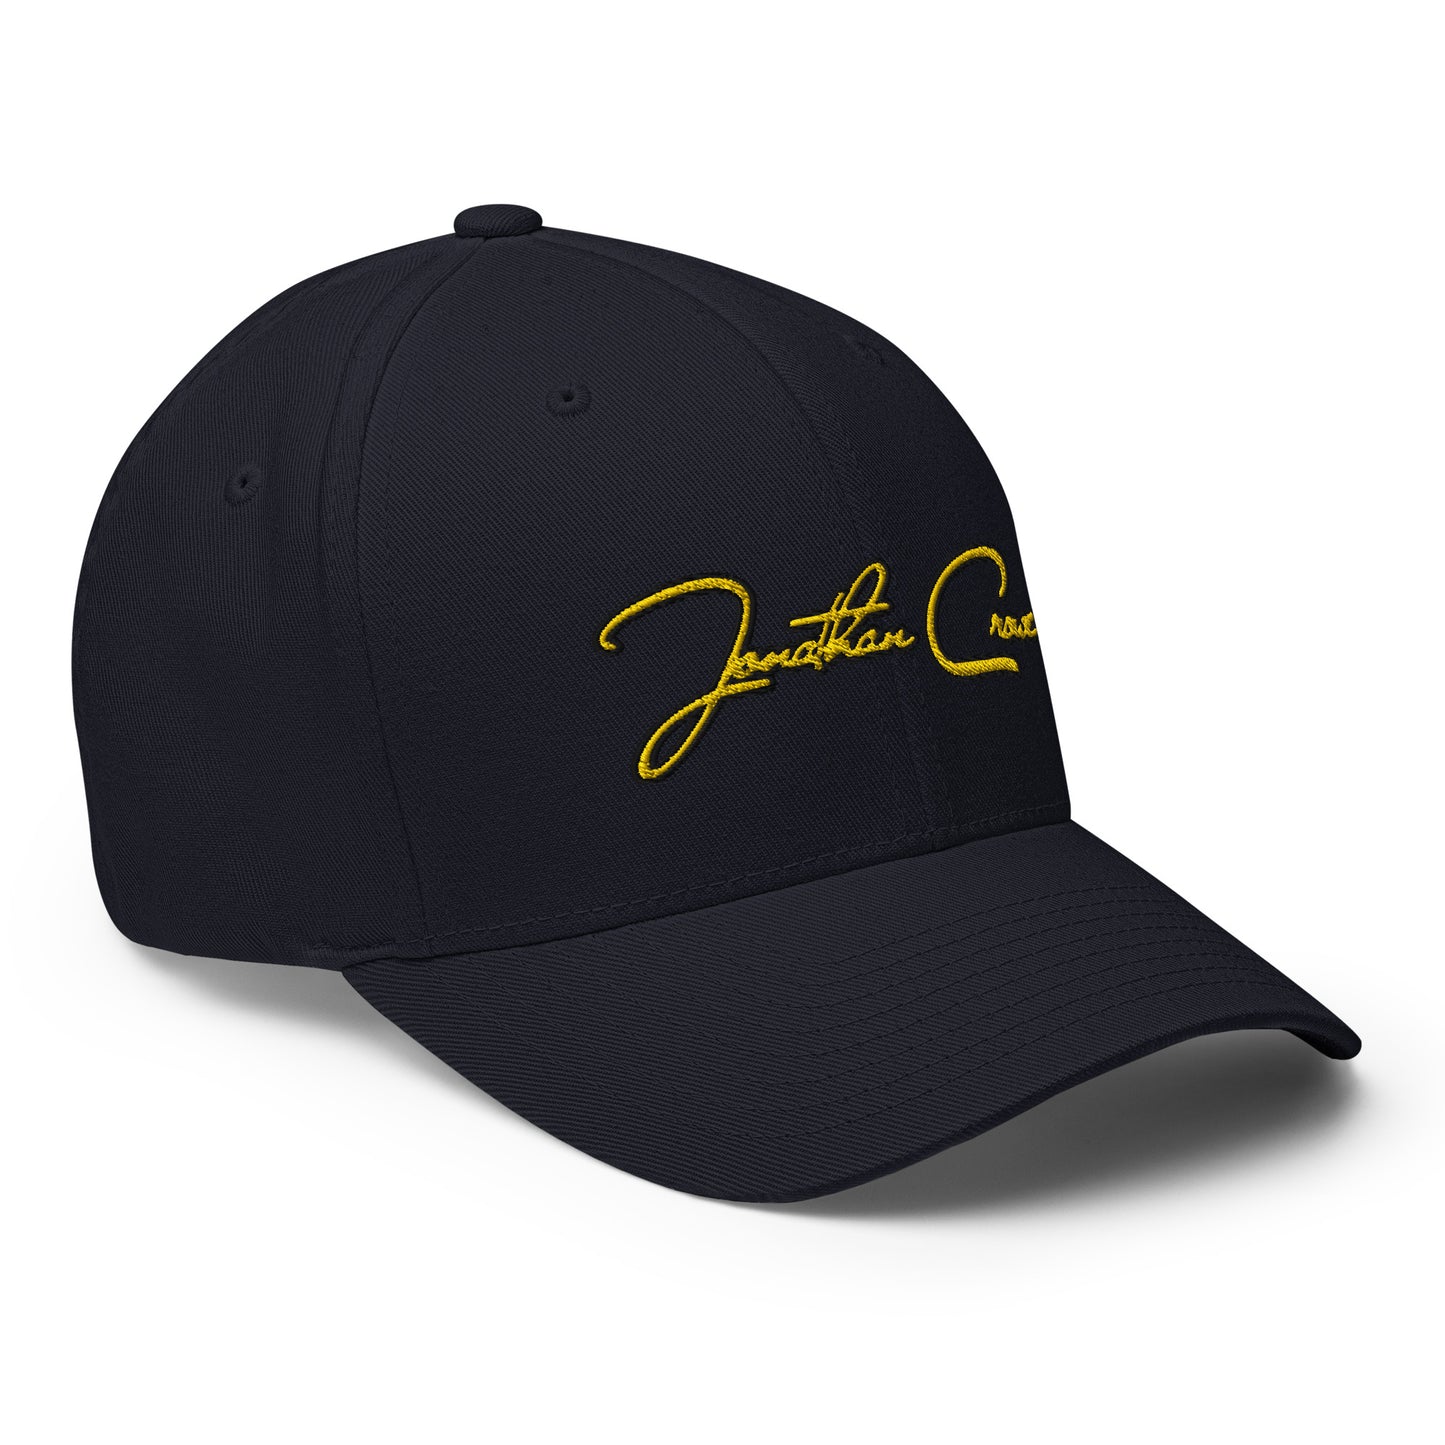 JC Signature Cap